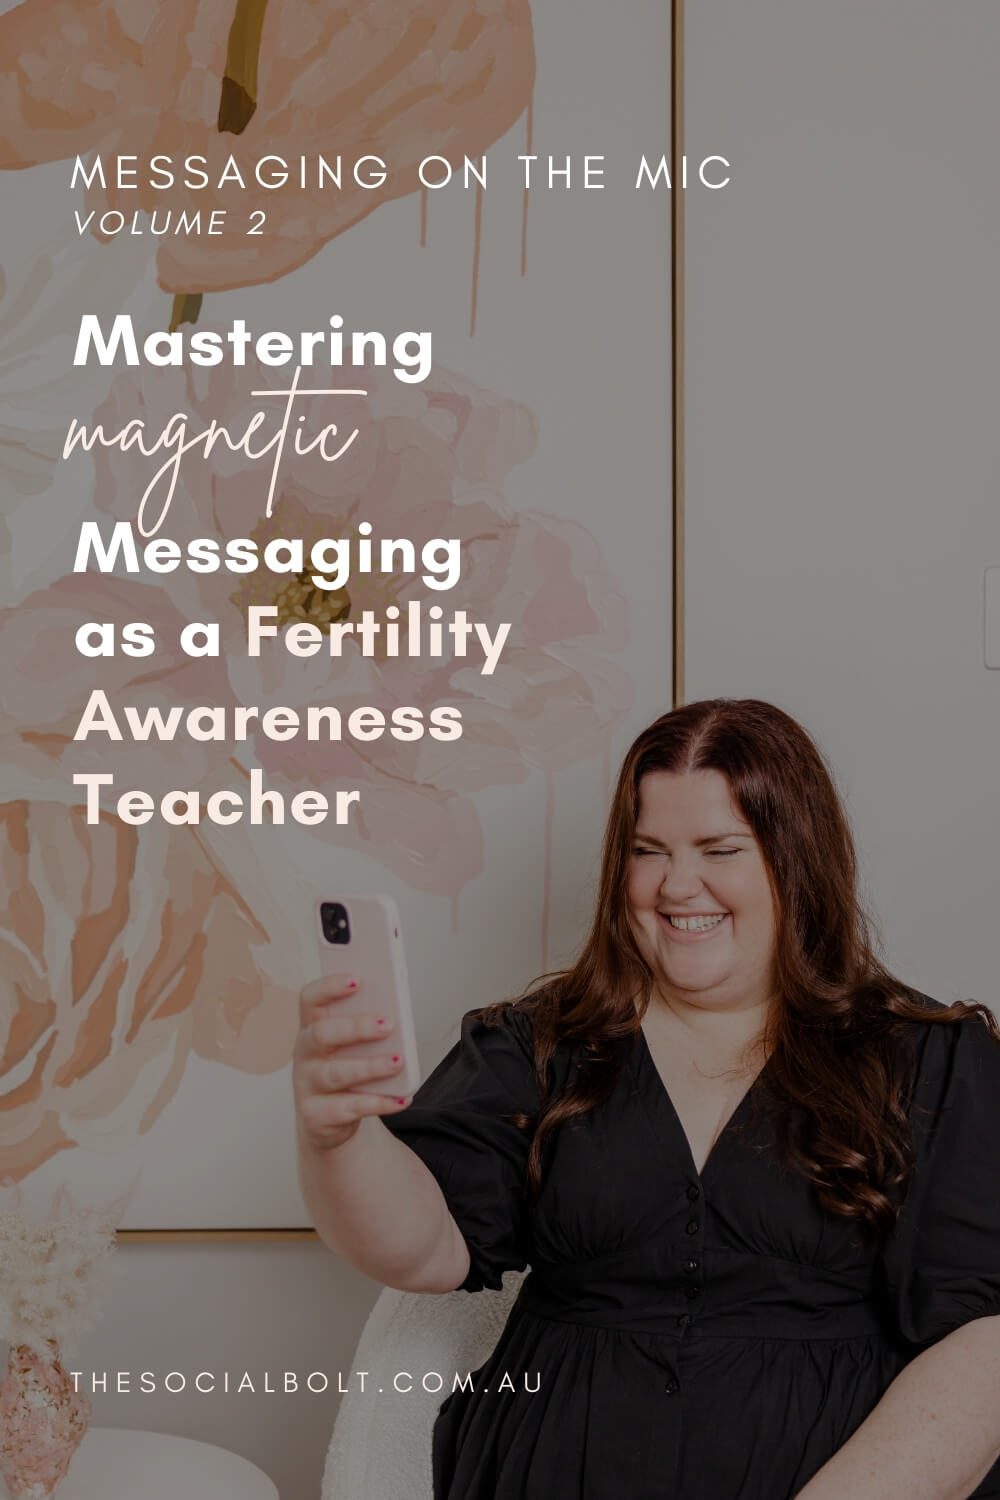 Mastering Magnetic Messaging as a Fertility Awareness Teacher